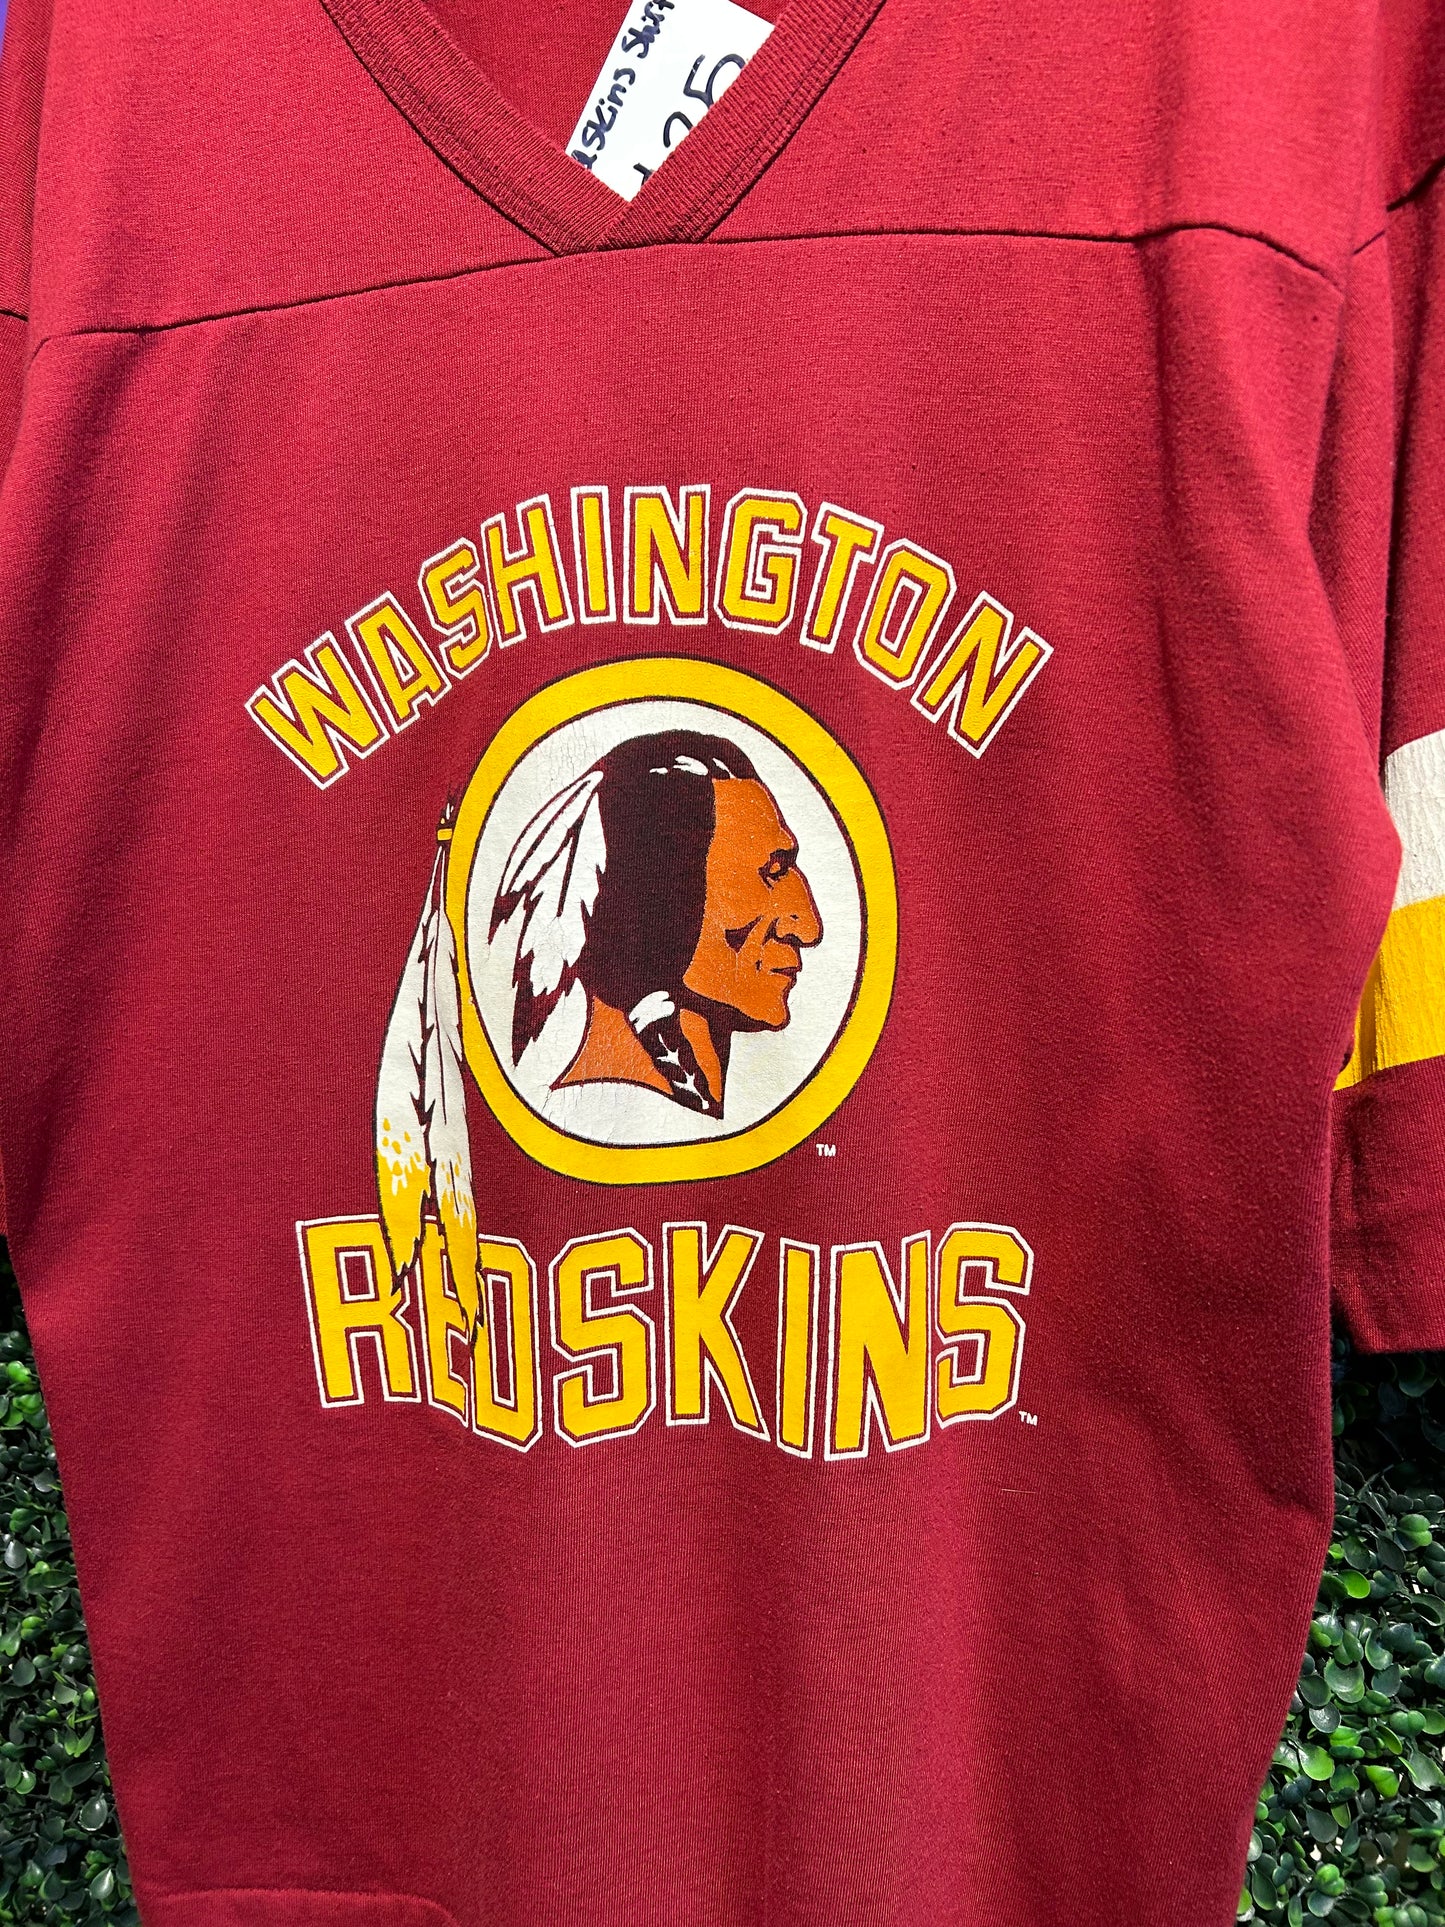 90s Washington Redskins 3/4 Sleeve Jersey Shirt. Size Large